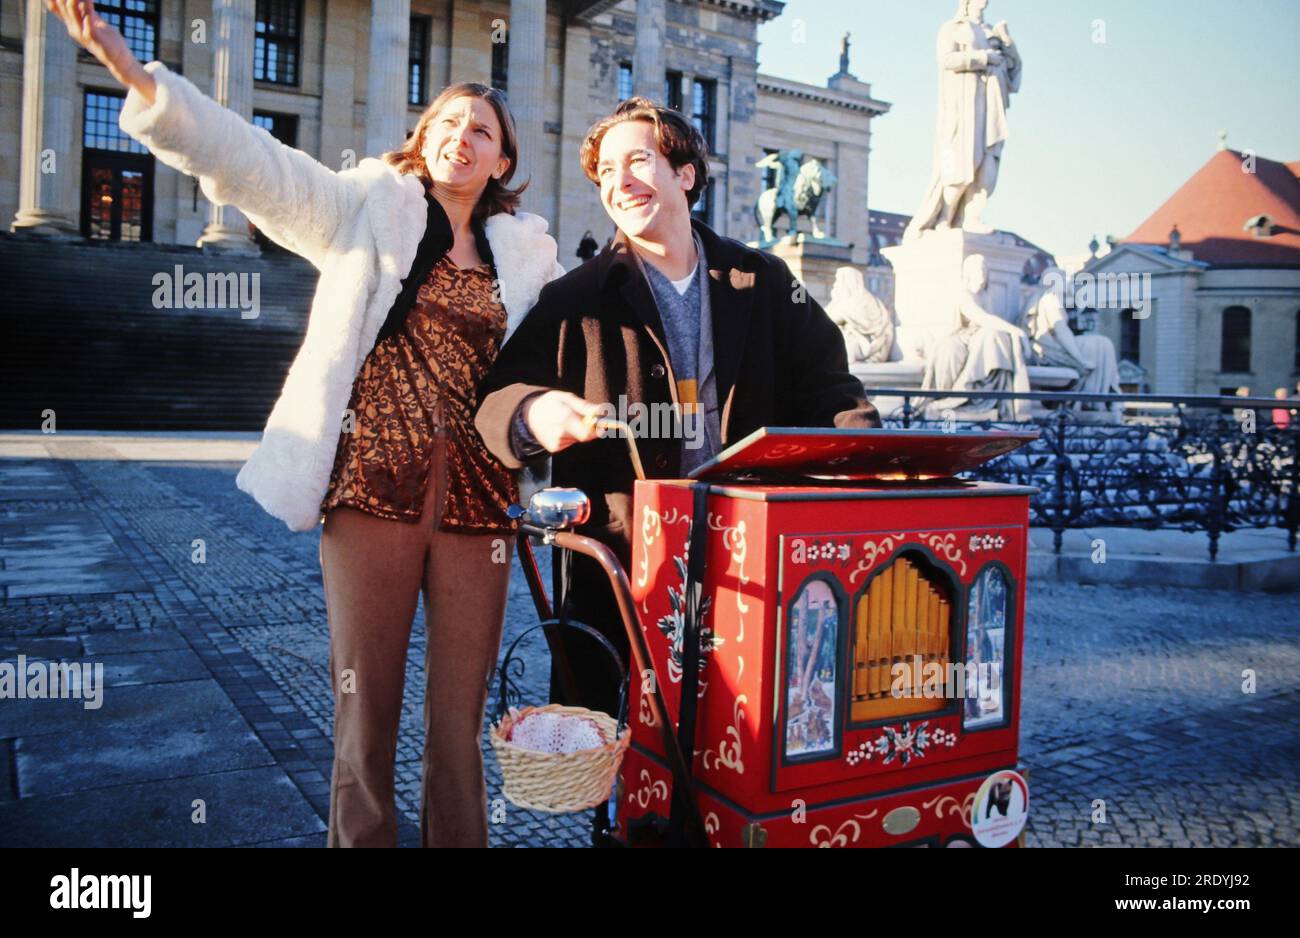 Alexander Pschill, österreichischer Schauspieler, als Leierkastenmann mit Kollegin Tanja Fornaro bei einem Spaziergang durch Berlin, Deutschland 1997. Stock Photo